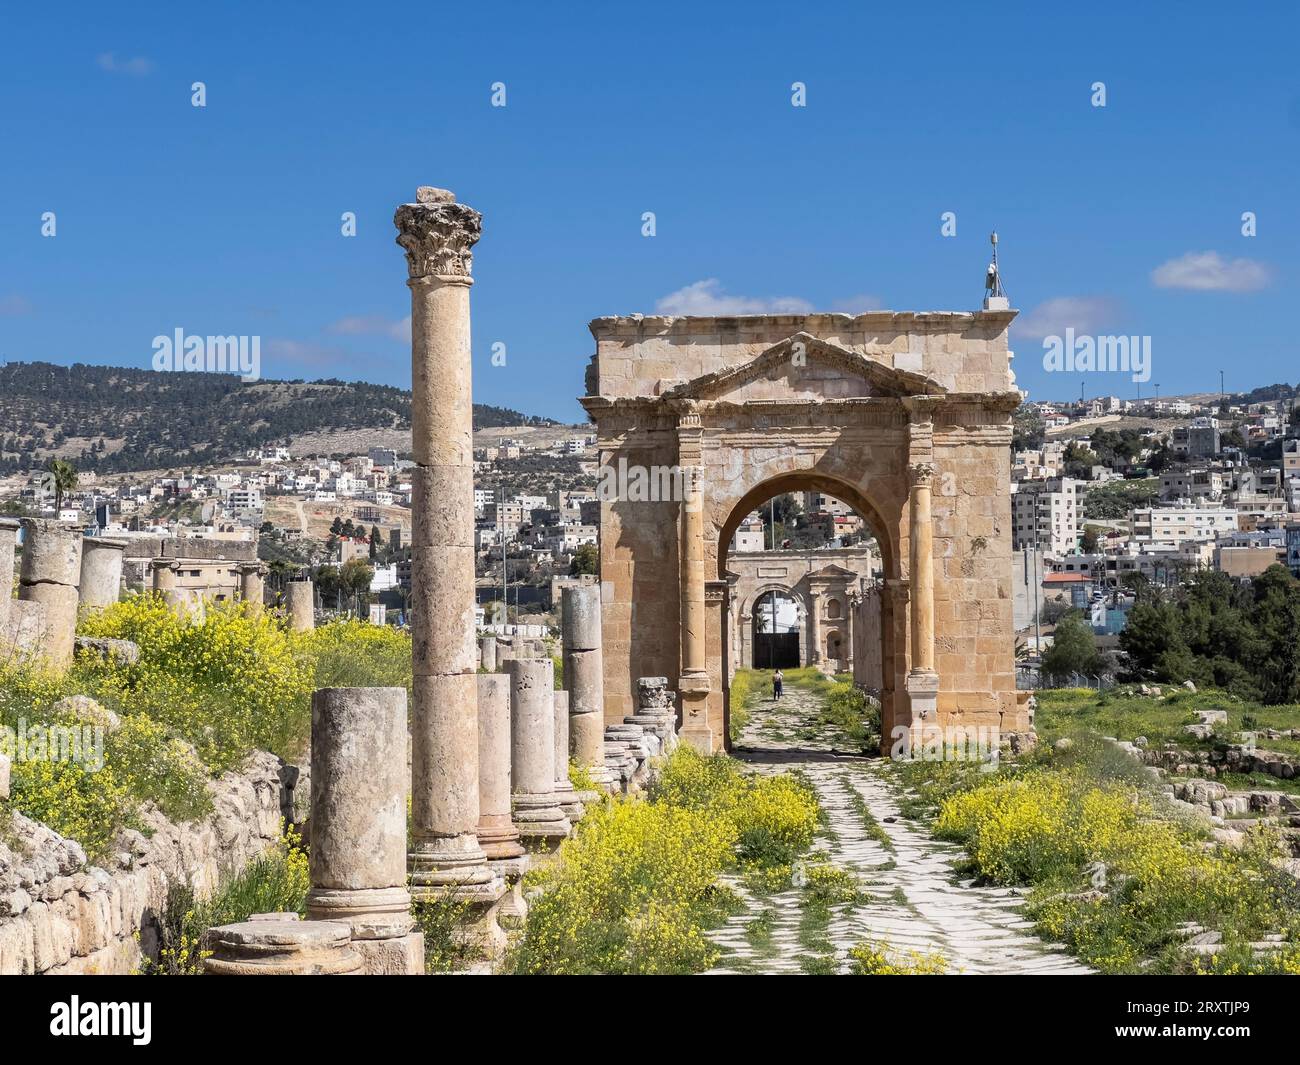 Arcade columée dans l'ancienne ville de Jerash, qui aurait été fondée en 331 av. J.-C. par Alexandre le Grand, Jerash, Jordanie, Moyen-Orient Banque D'Images